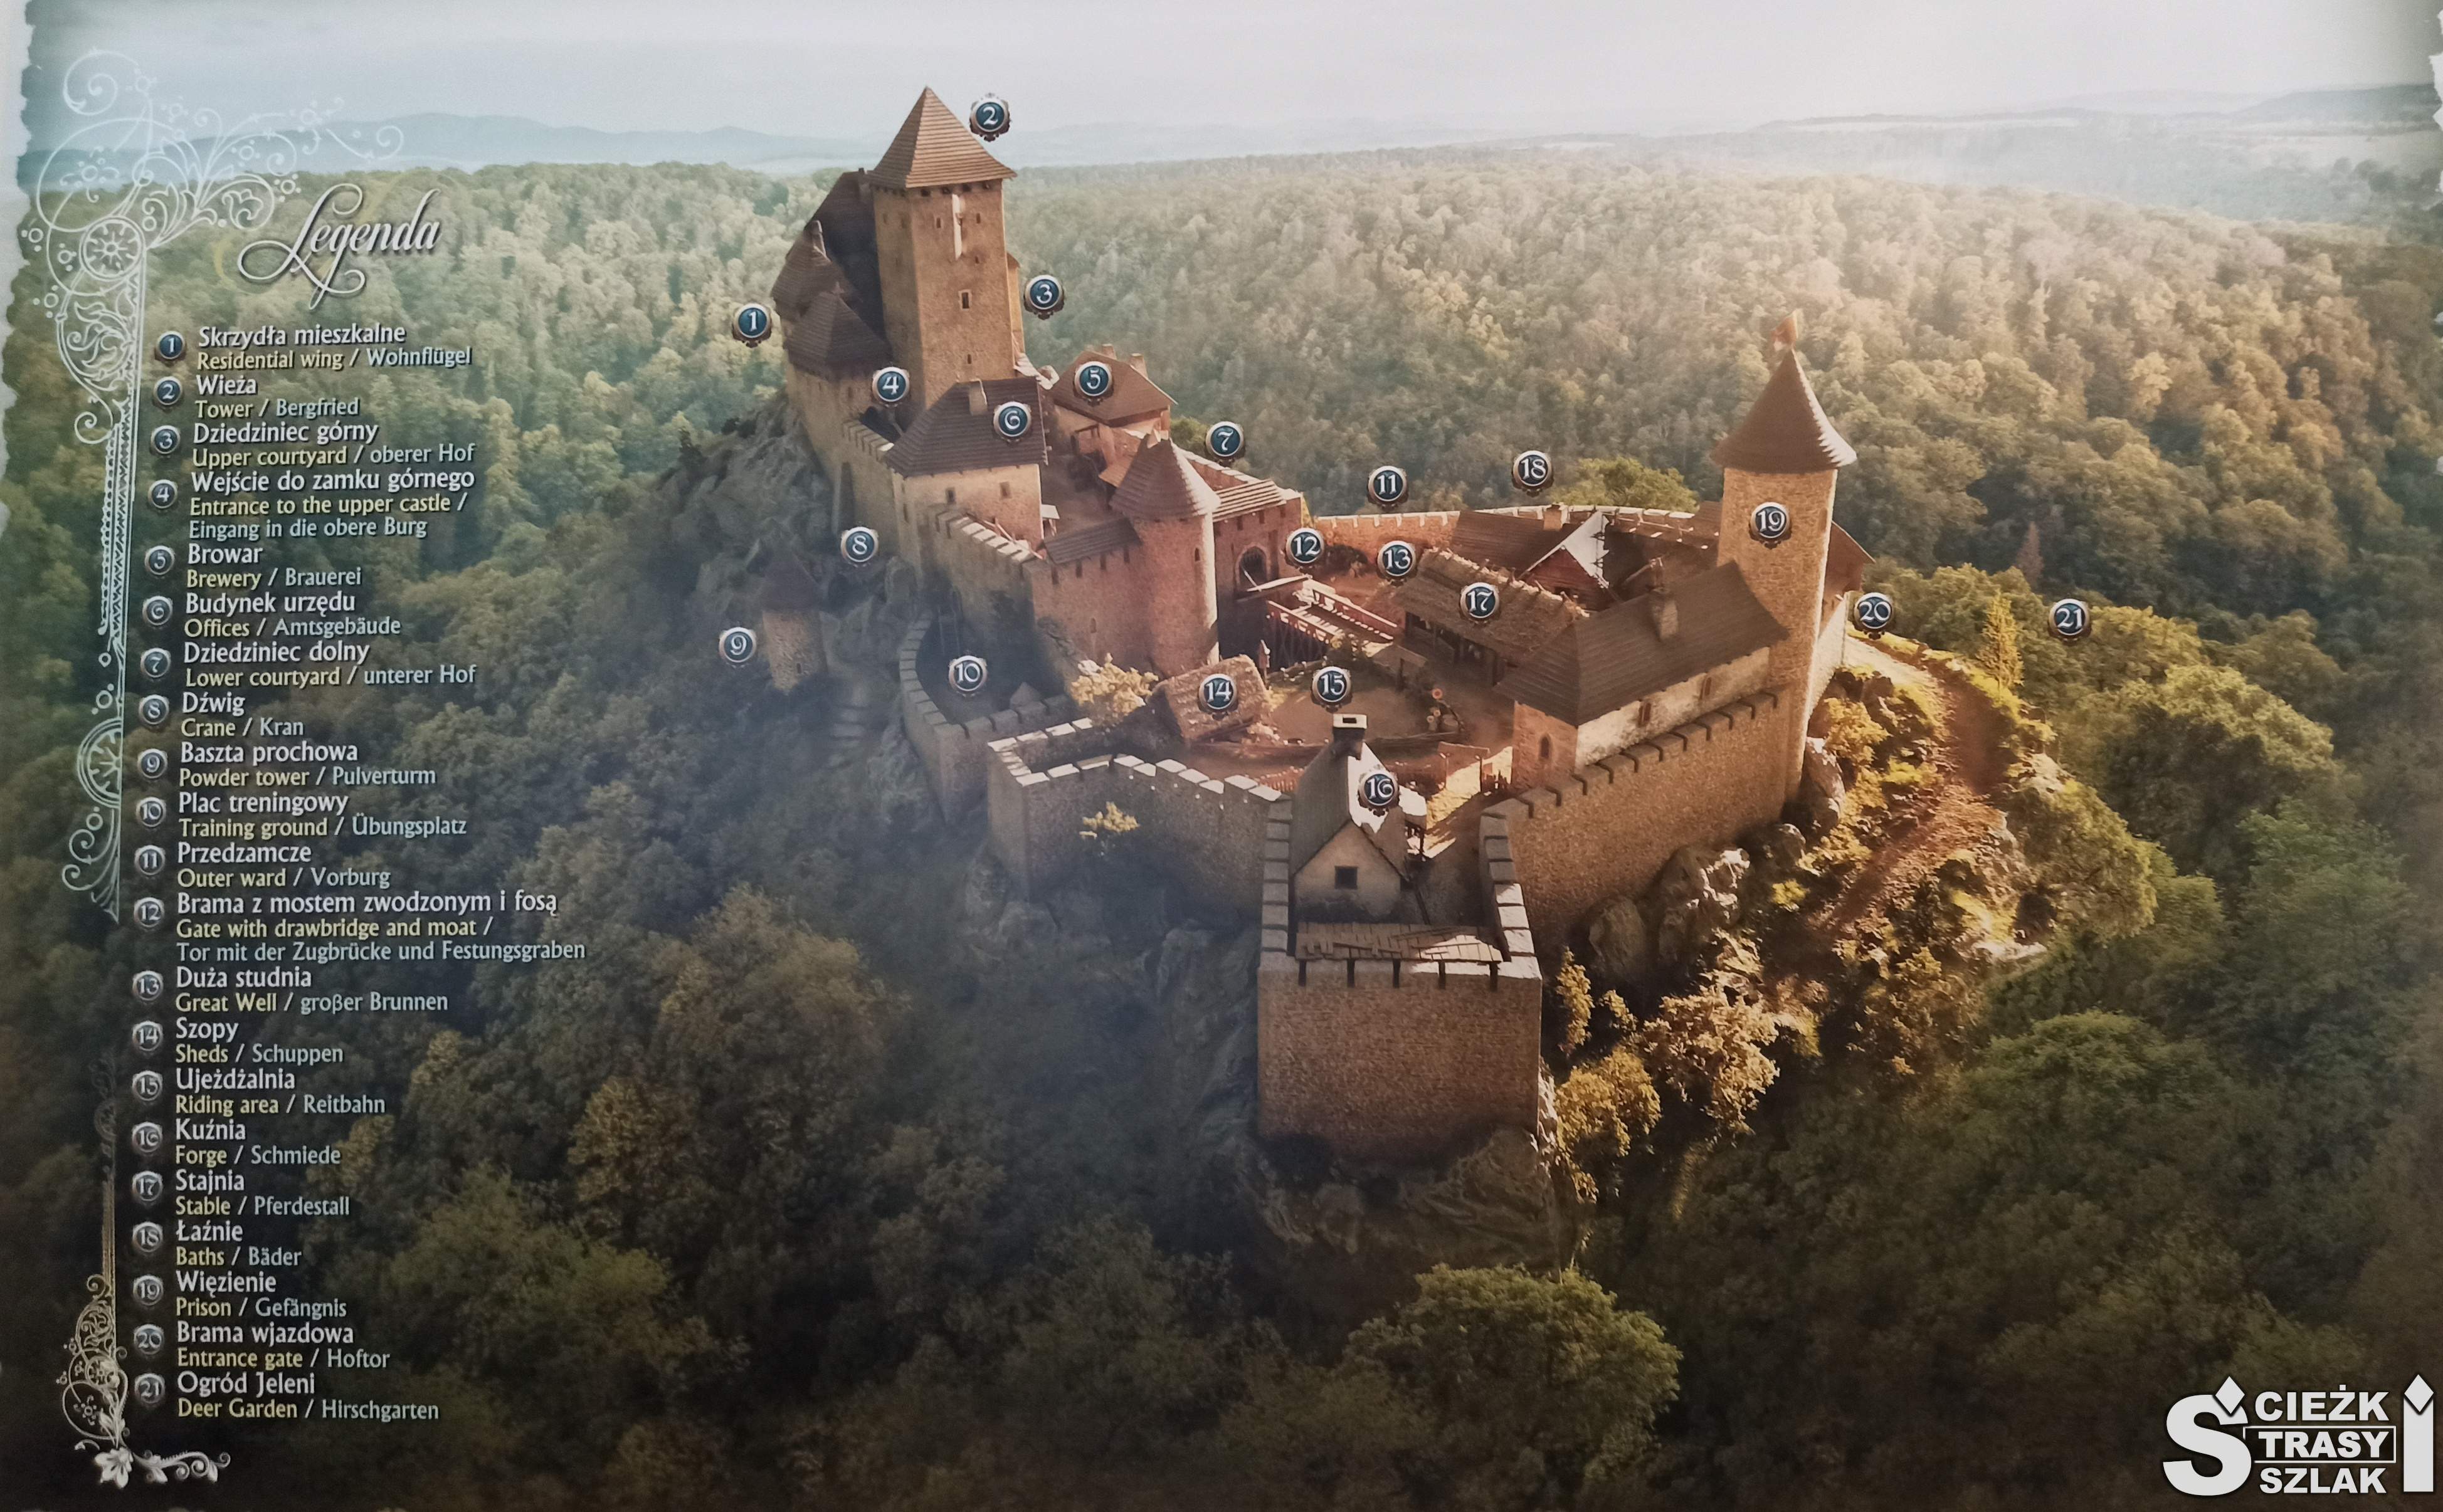 Zamek Książ dający podgląd na wszystkie przynależne do niego budynki z legendą po lewej stronie